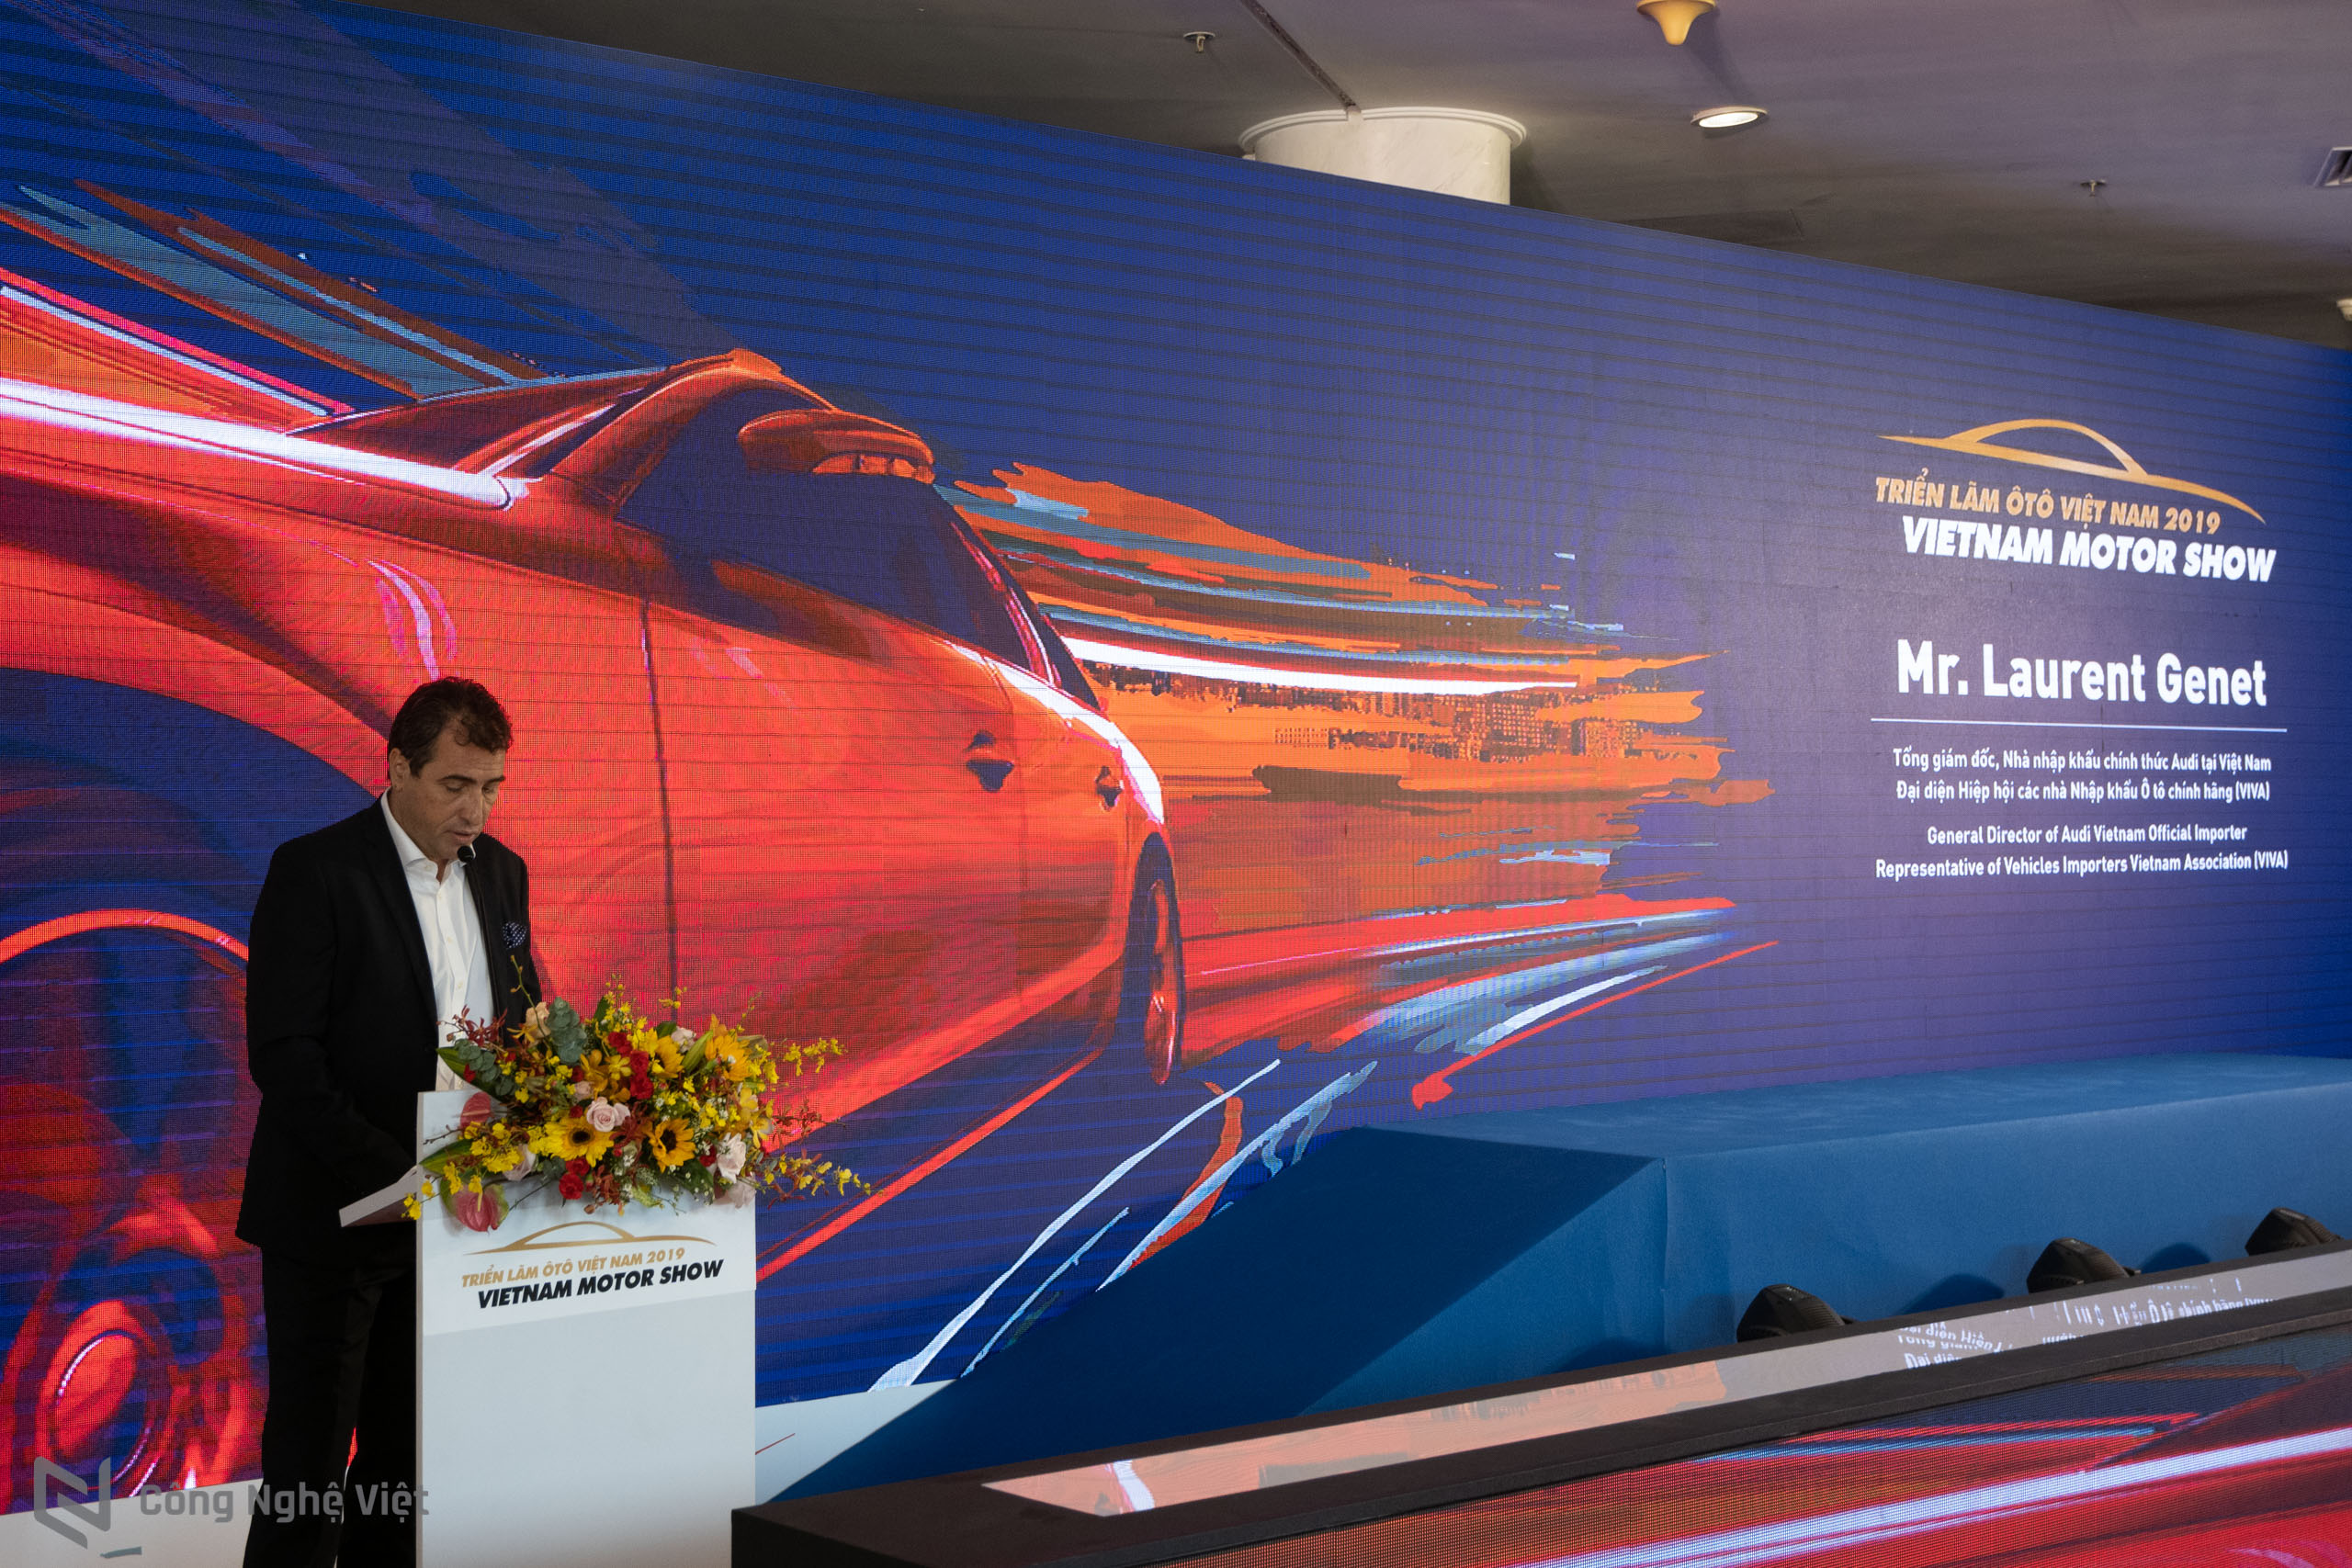 Chính thức khai mạc triển lãm ô tô Việt Nam – VietNam Motor Show 2019